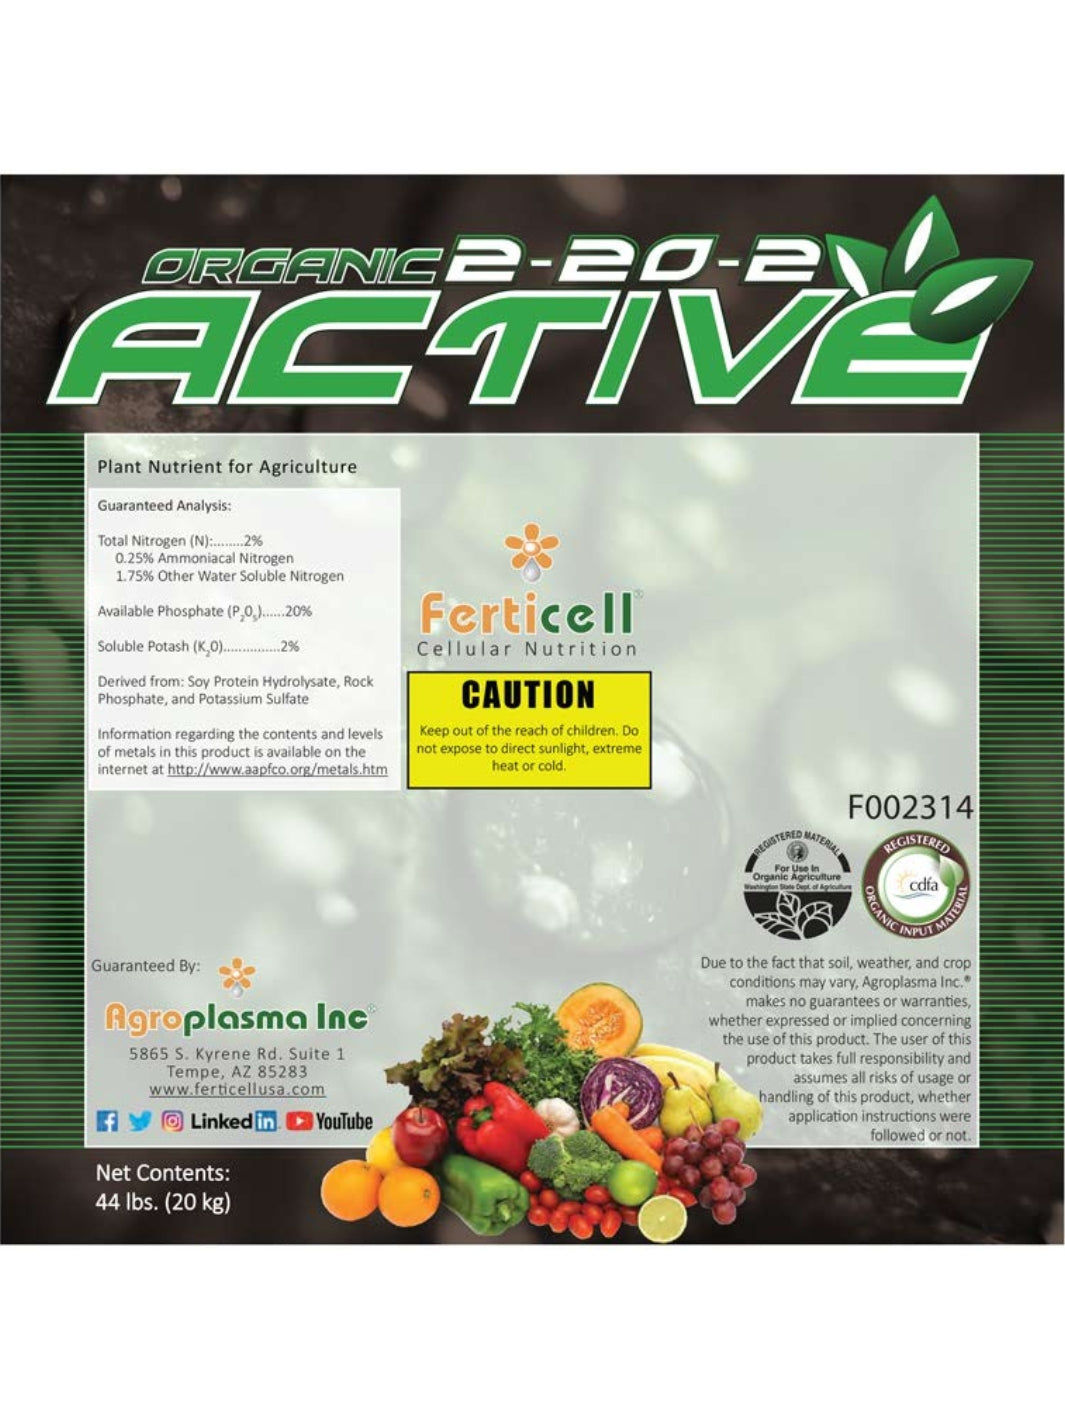 Active 2-20-2 Organic Fertilizer Label